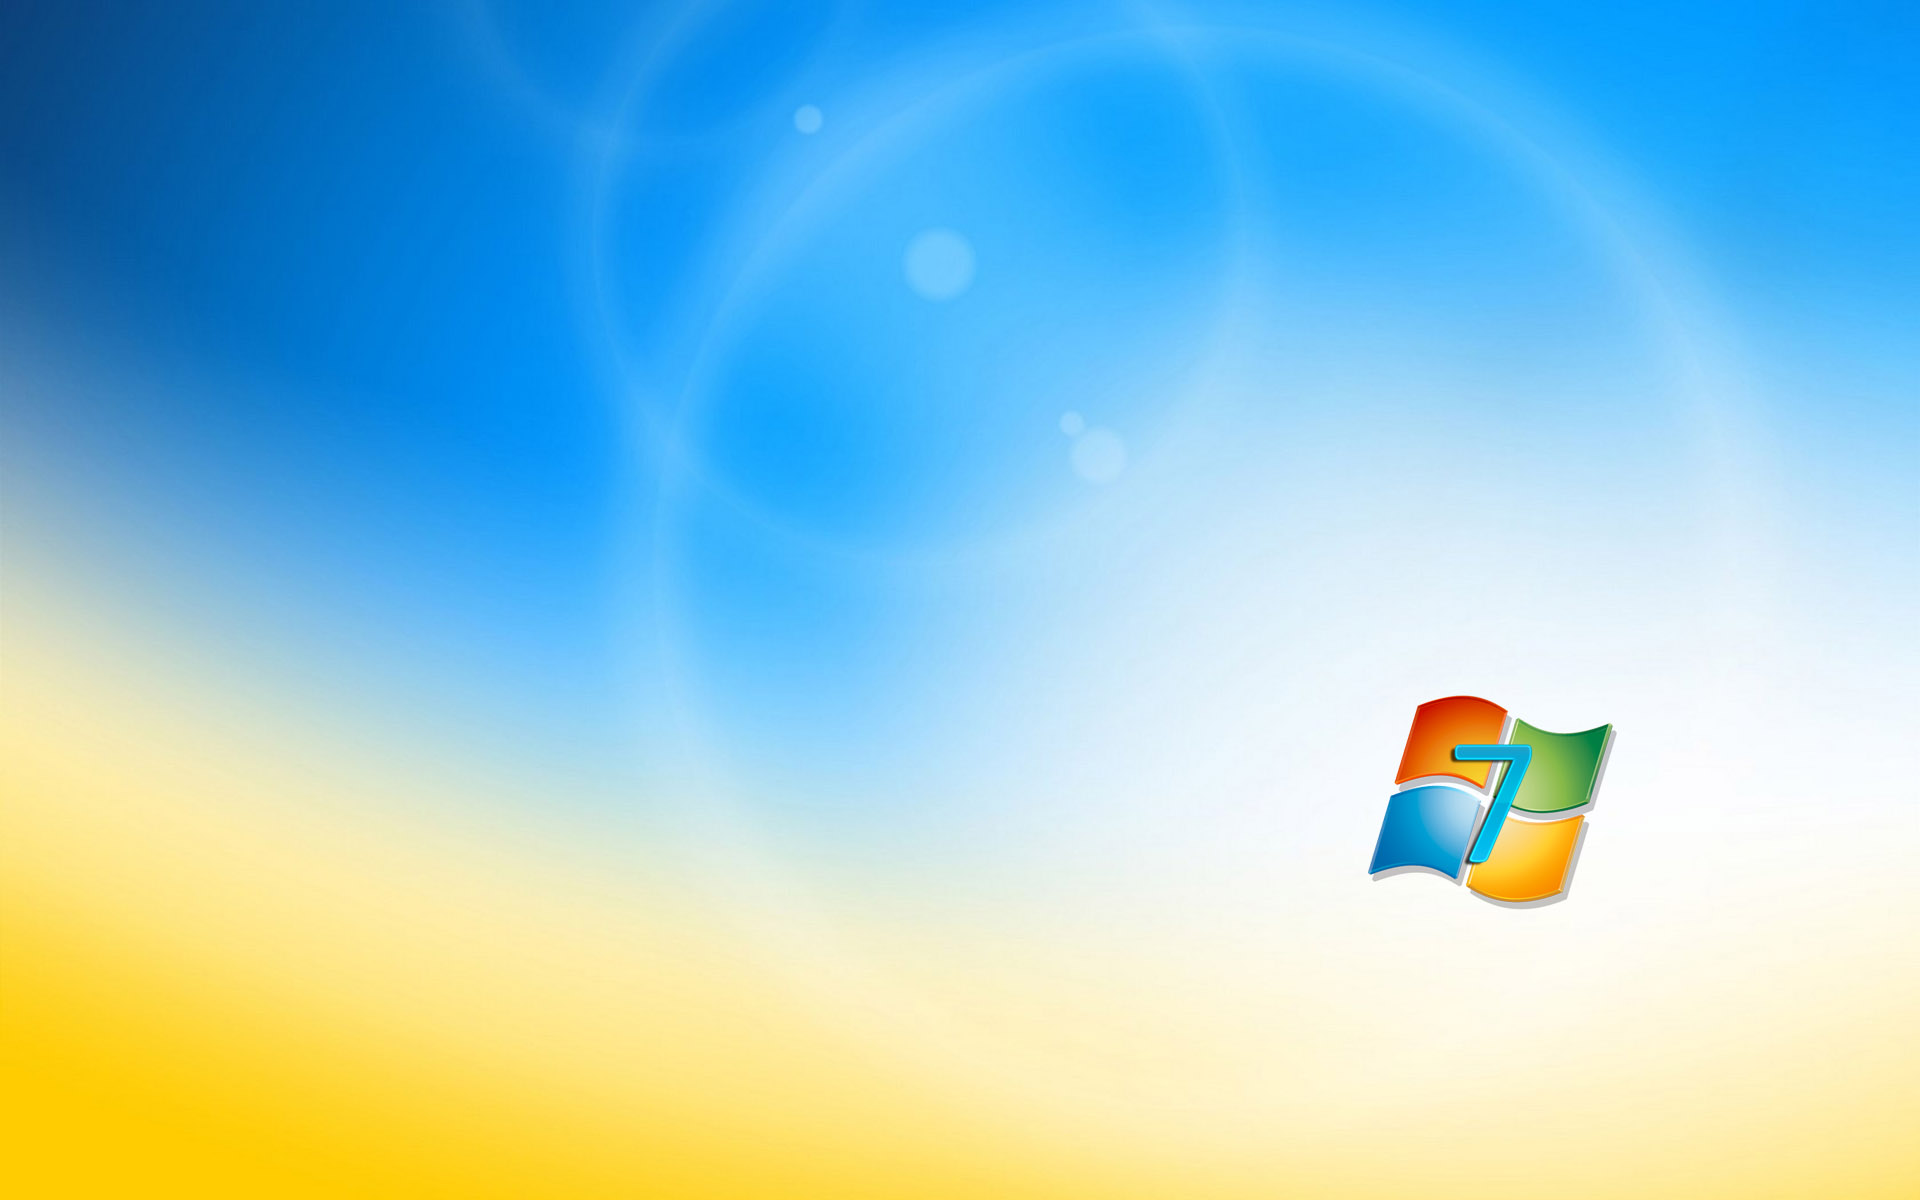 Hãy sử dụng hình nền Windows 7 miễn phí để làm cho máy tính của bạn trở nên thú vị hơn. Với nhiều lựa chọn độc đáo, không chỉ làm cho màn hình nổi bật mà còn thể hiện cá tính của bạn. Hãy rải đầy màn hình của bạn với những hình nền miễn phí đẹp mắt từ chúng tôi! 